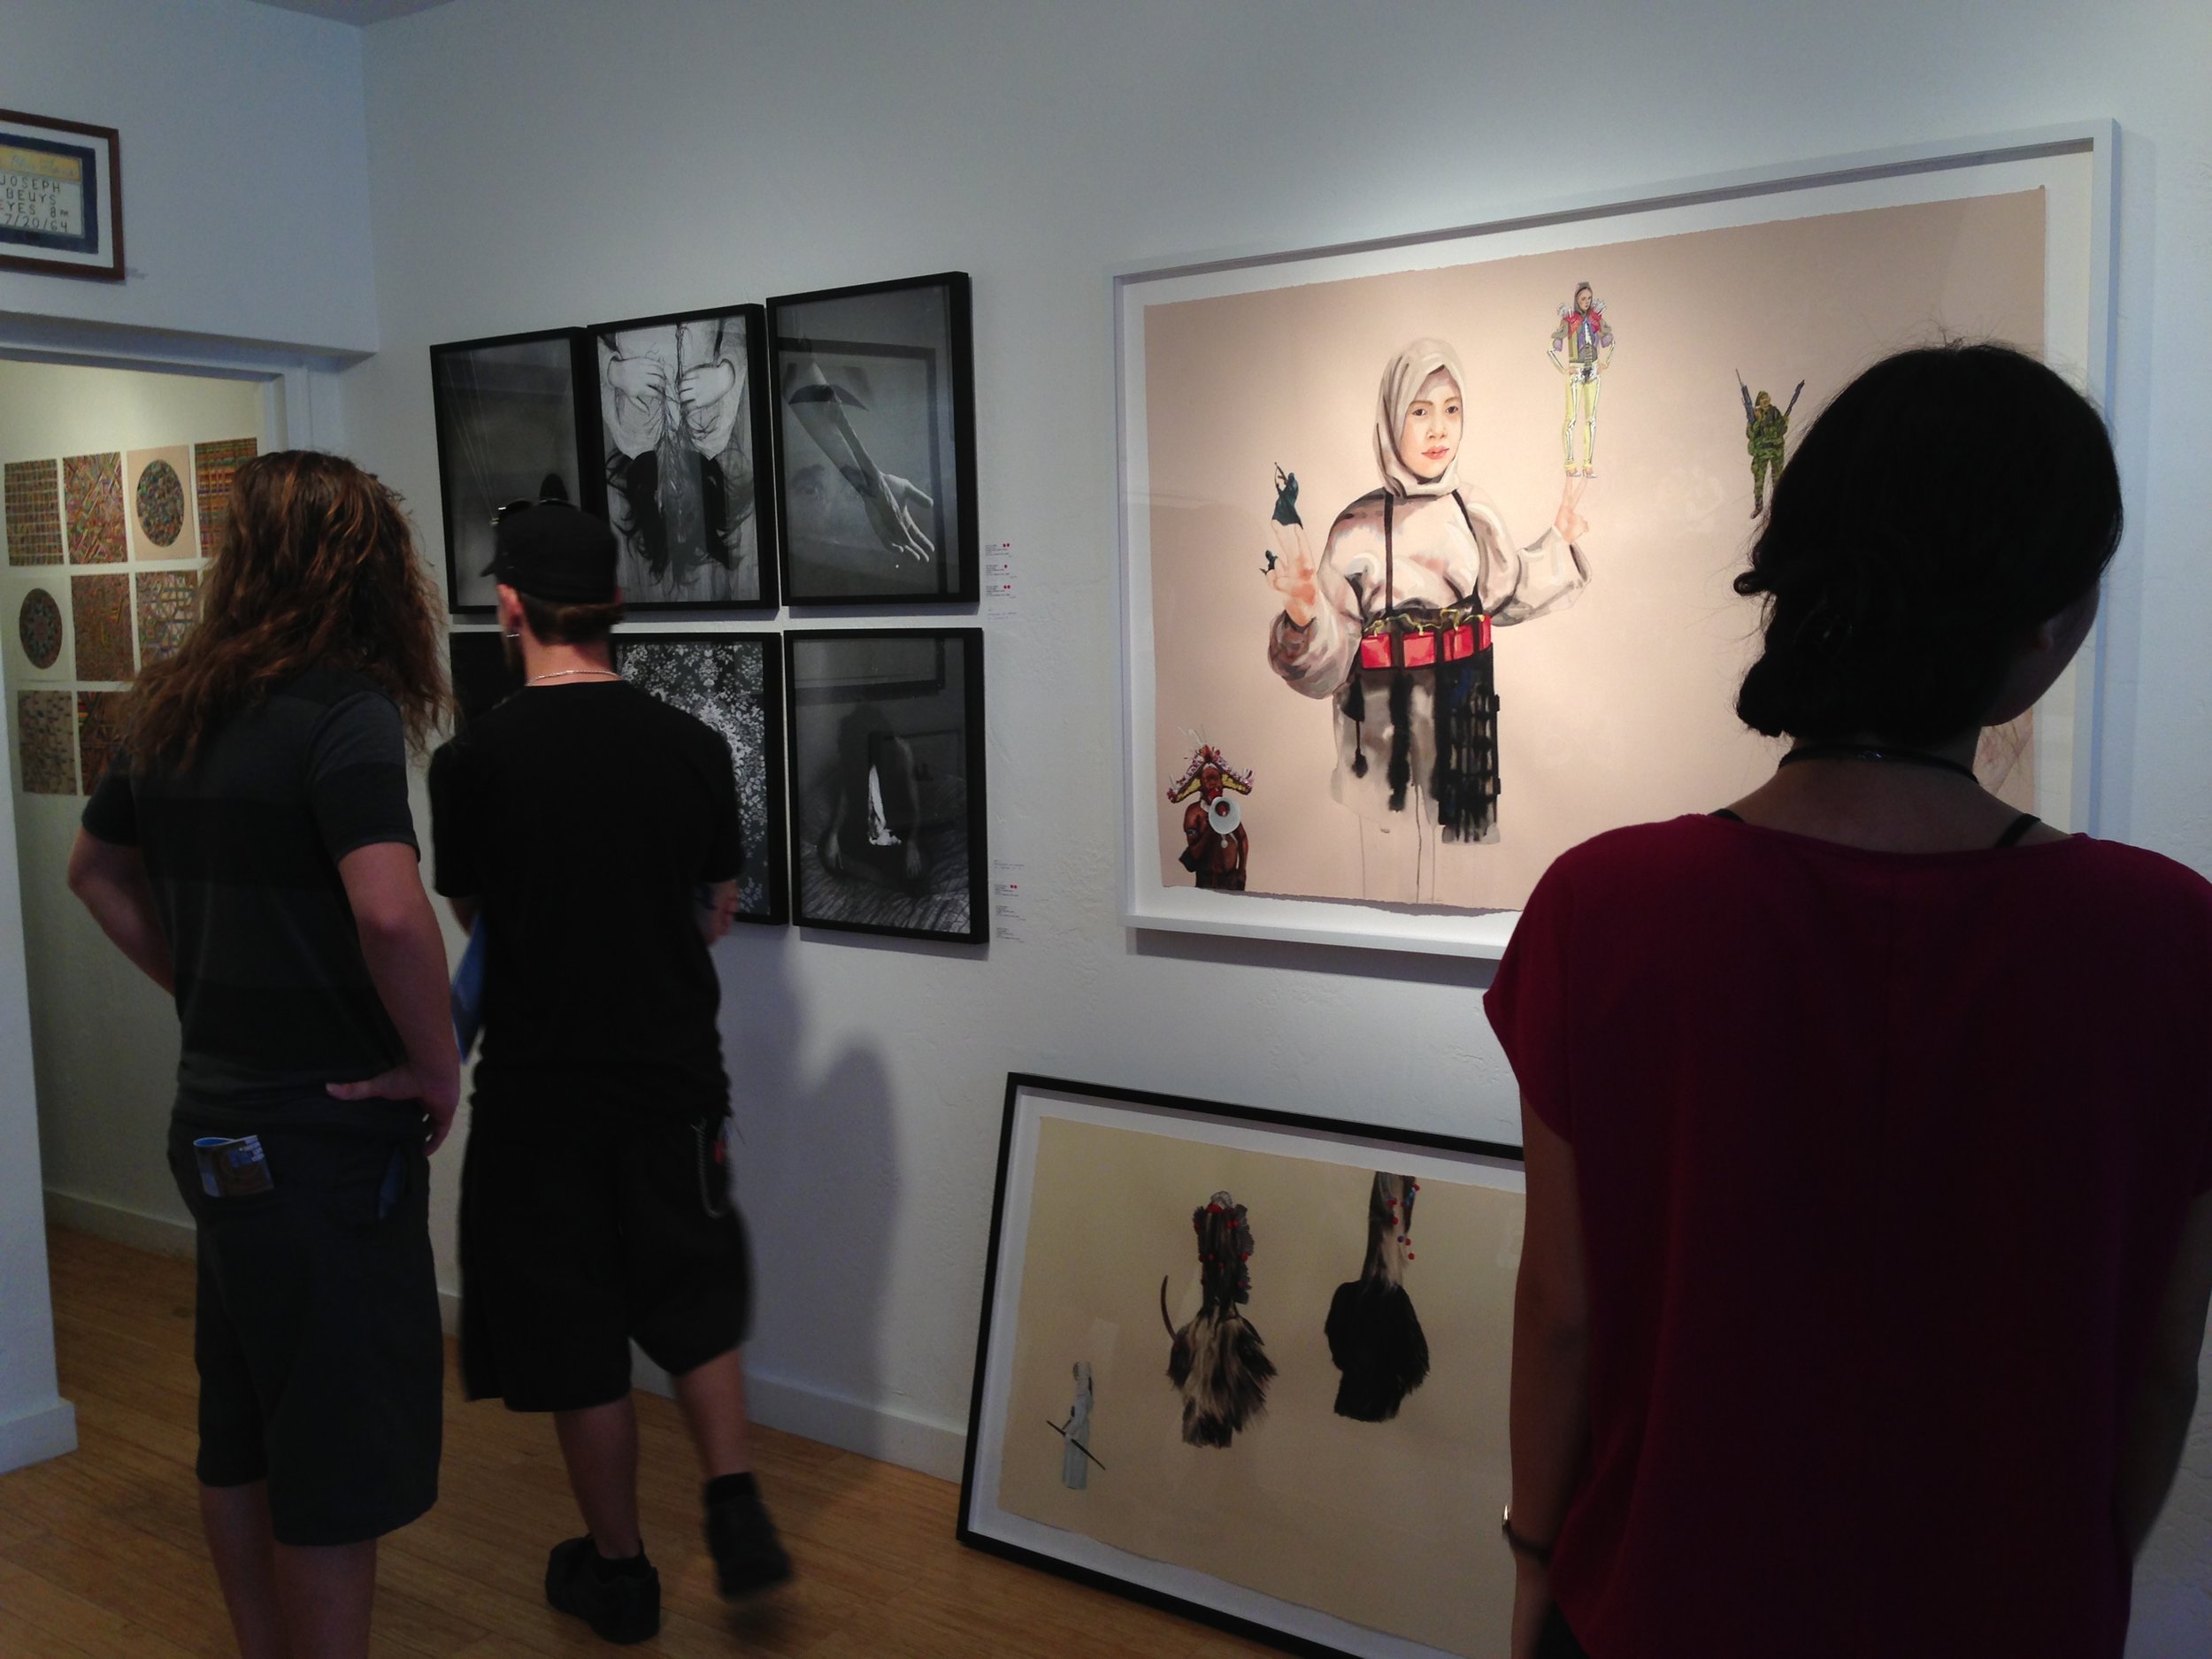  Aqua art fair, Get This gallery booth, Miami Beach, FL, 2014 